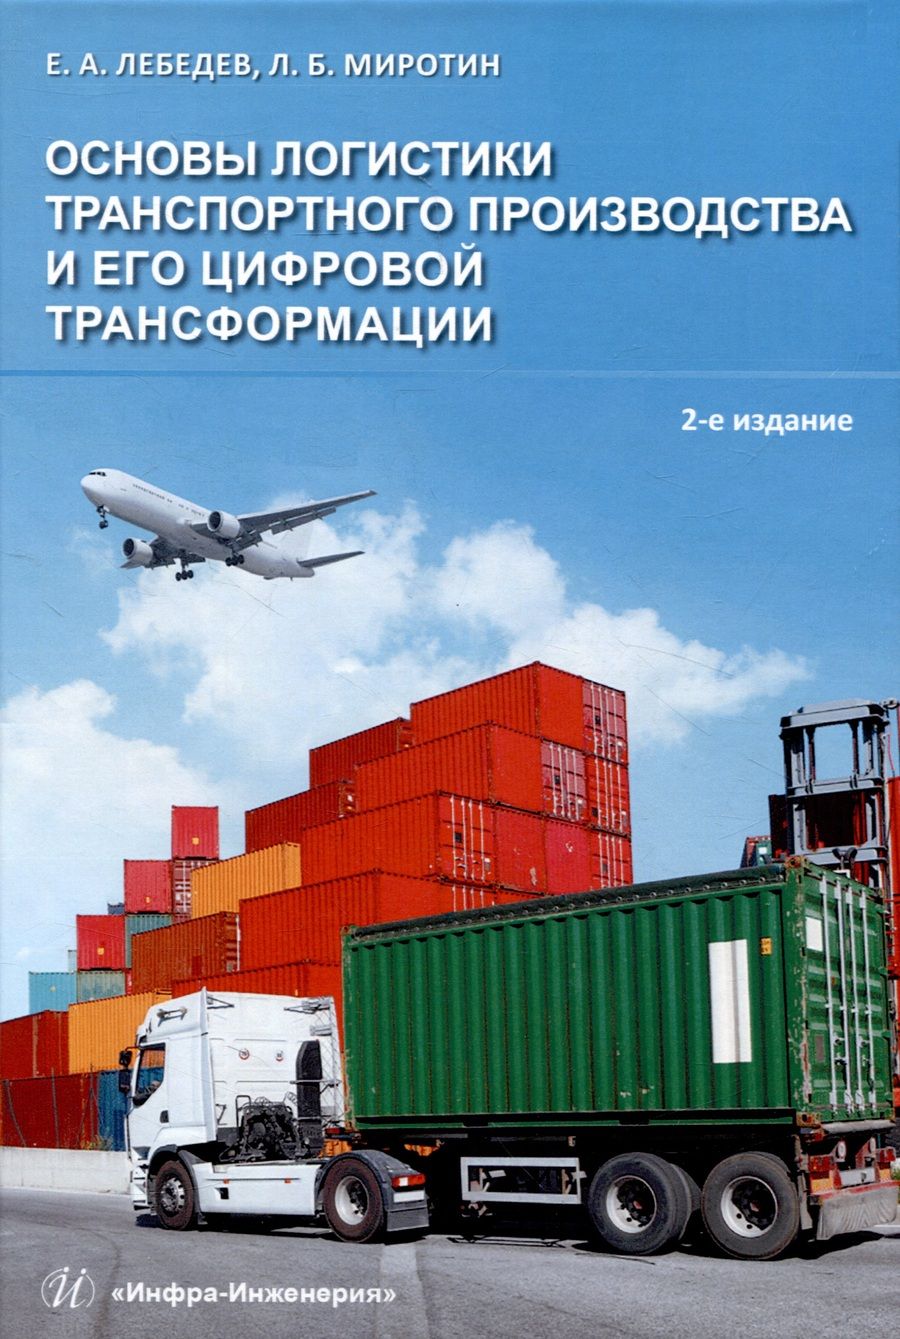 Обложка книги "Лебедев, Миротин: Основы логистики транспортного производства"